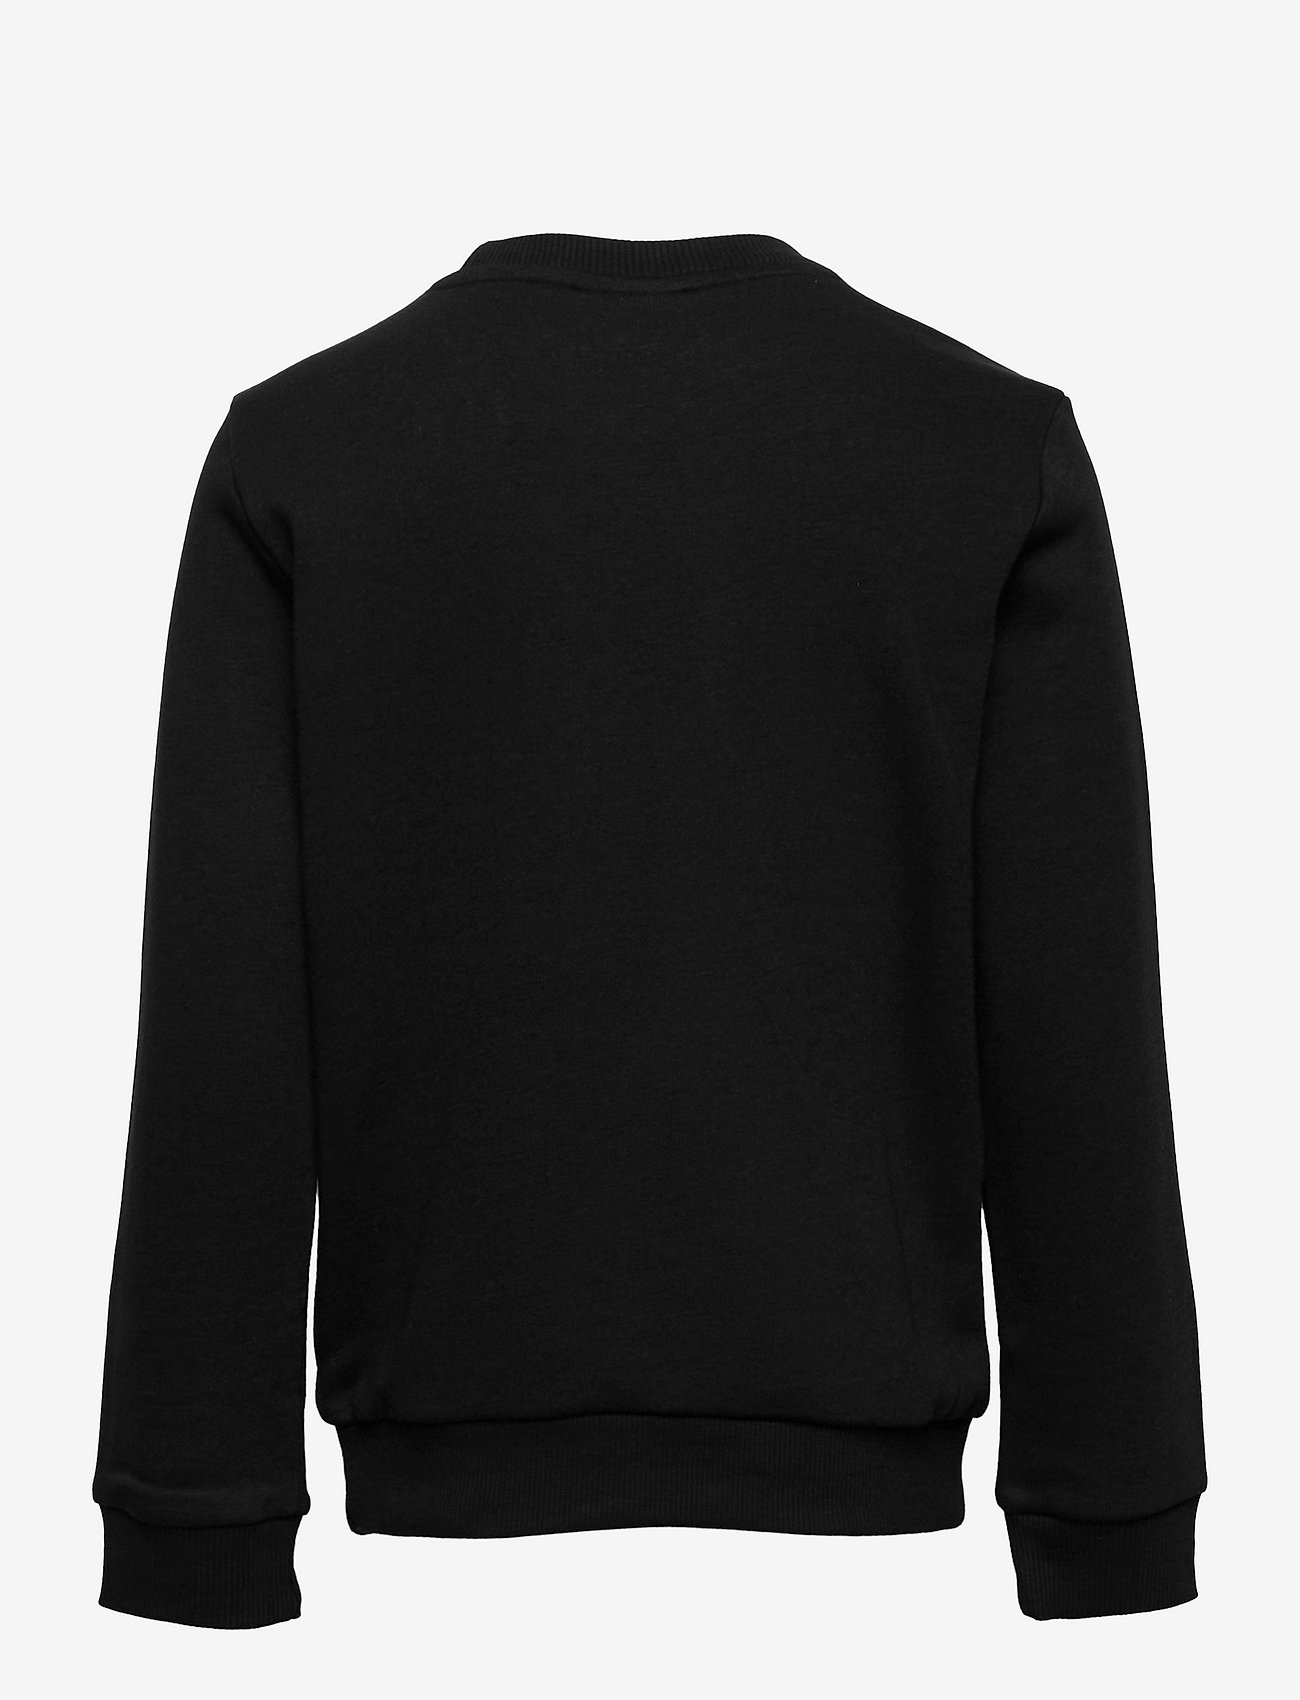 adidas Sportswear - Essentials Sweatshirt - sweatshirts - black/white - 1